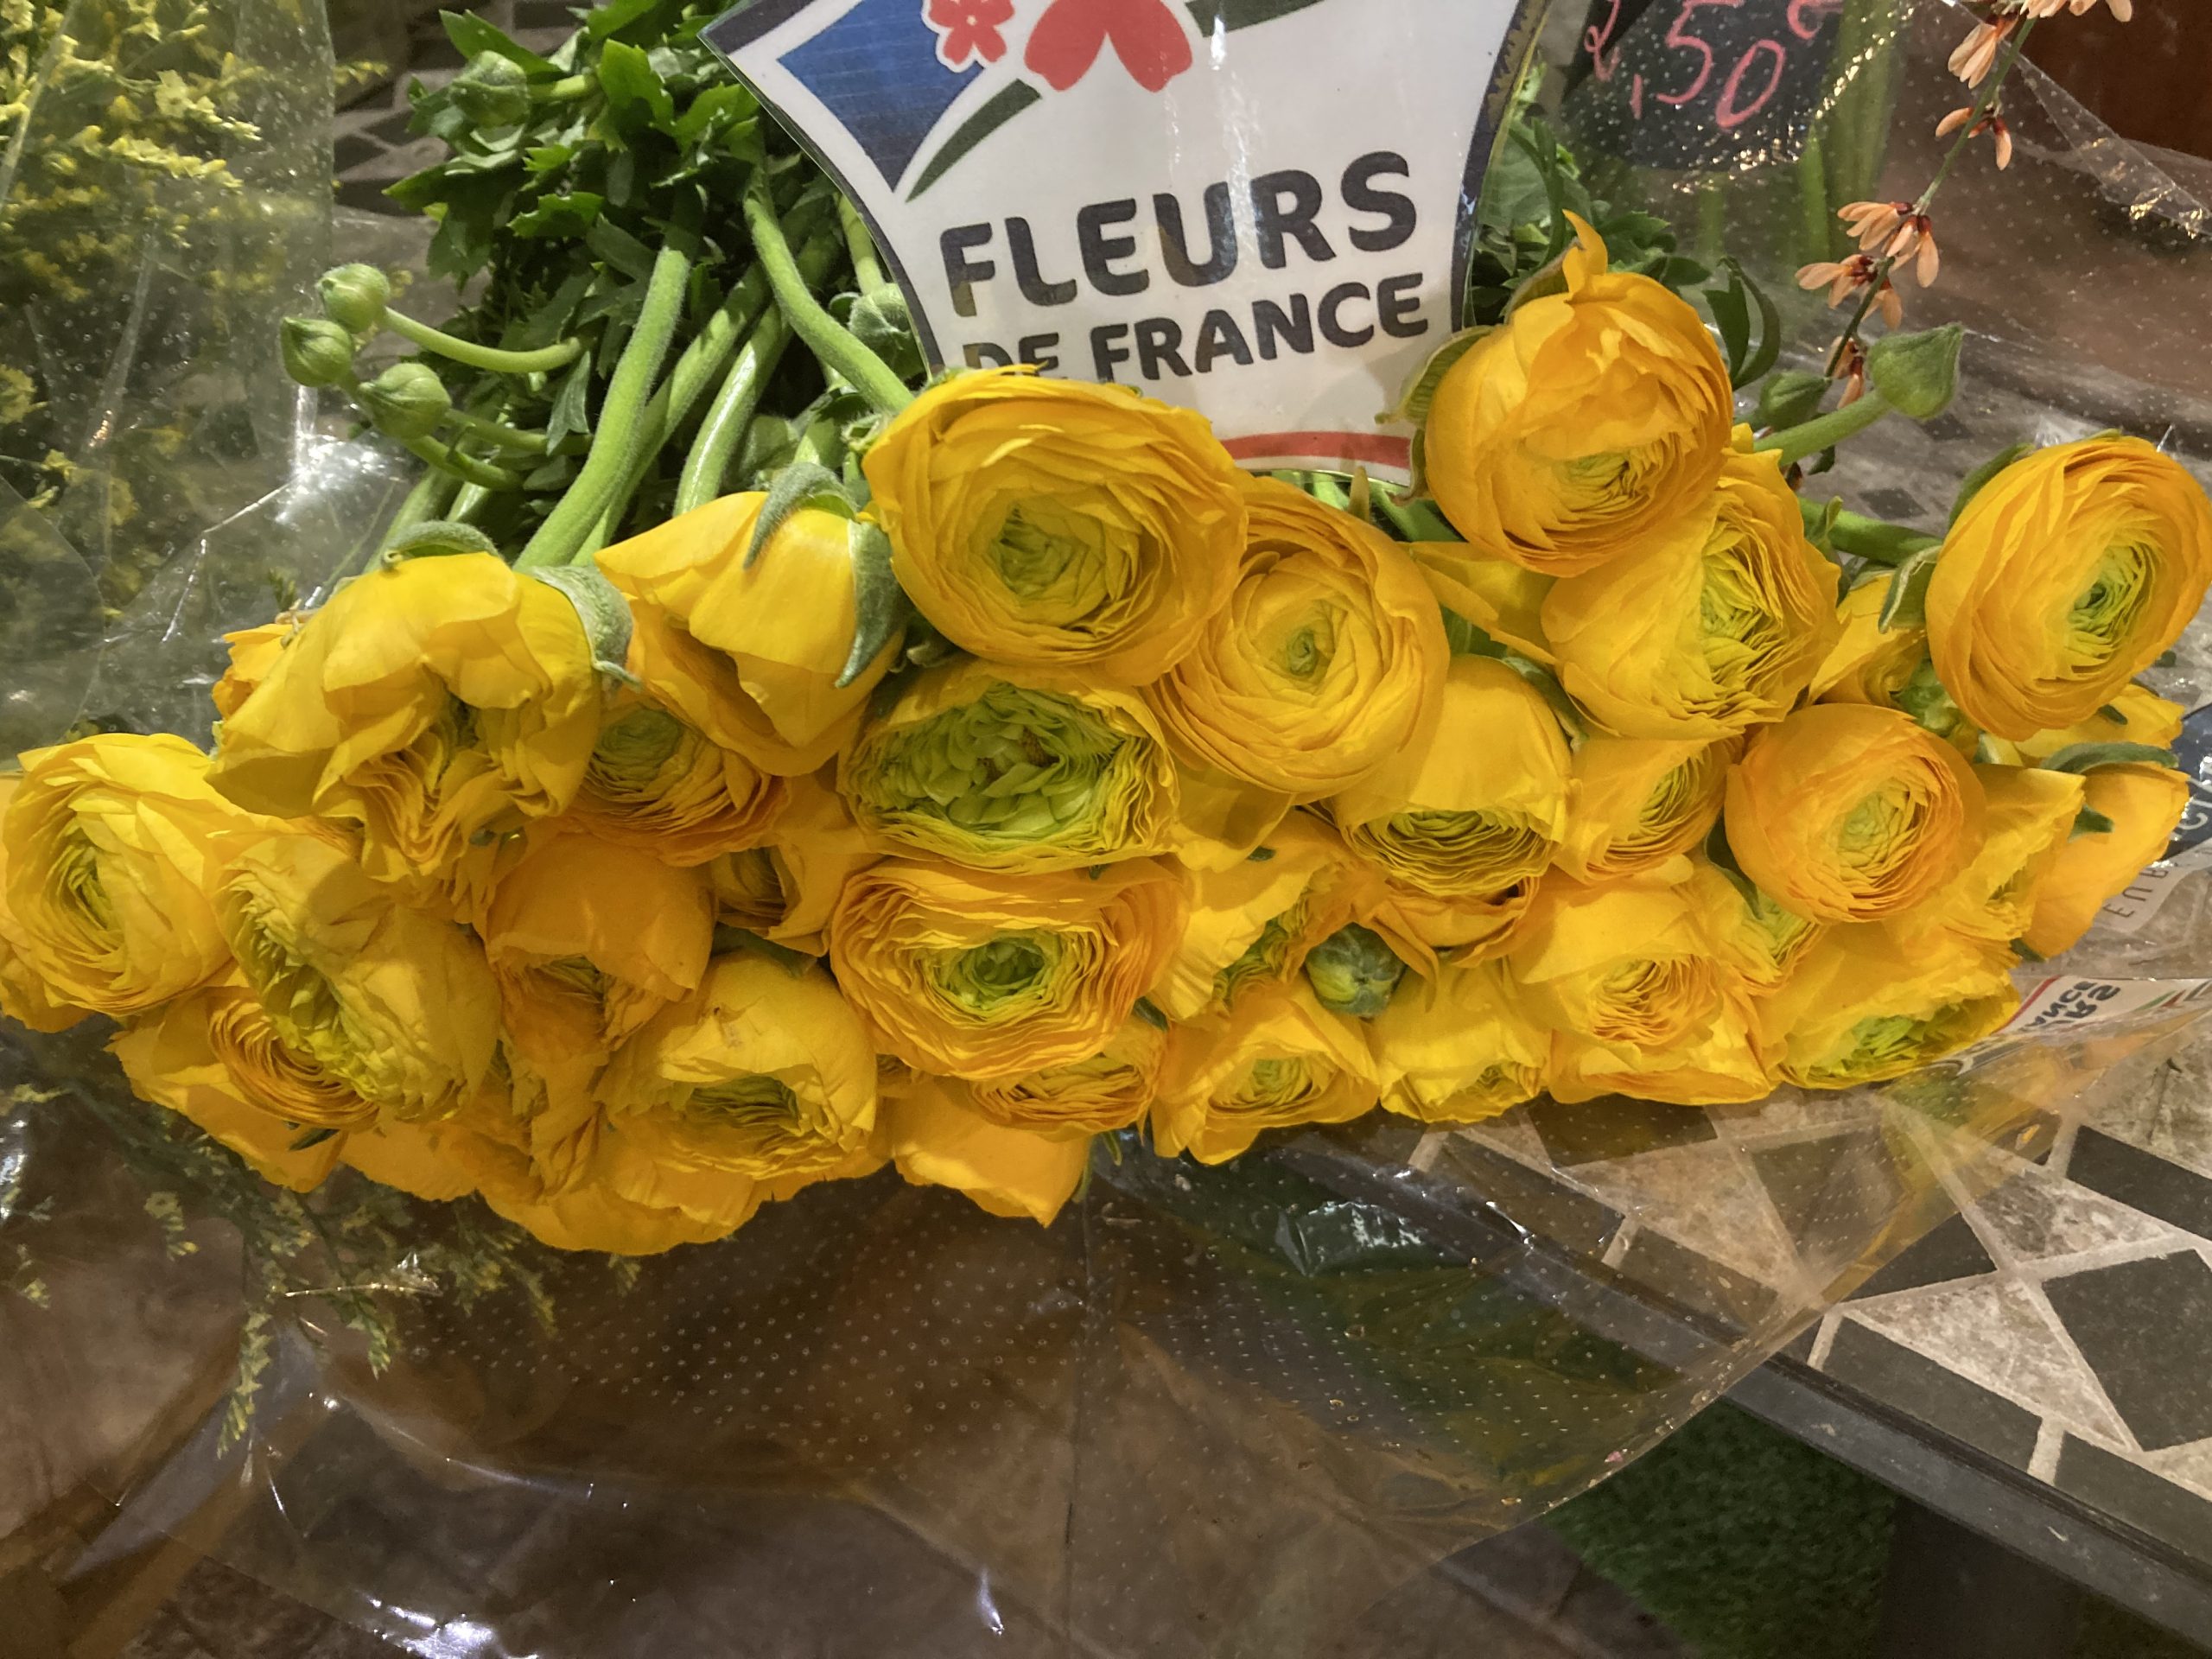 Fleurs de France ????